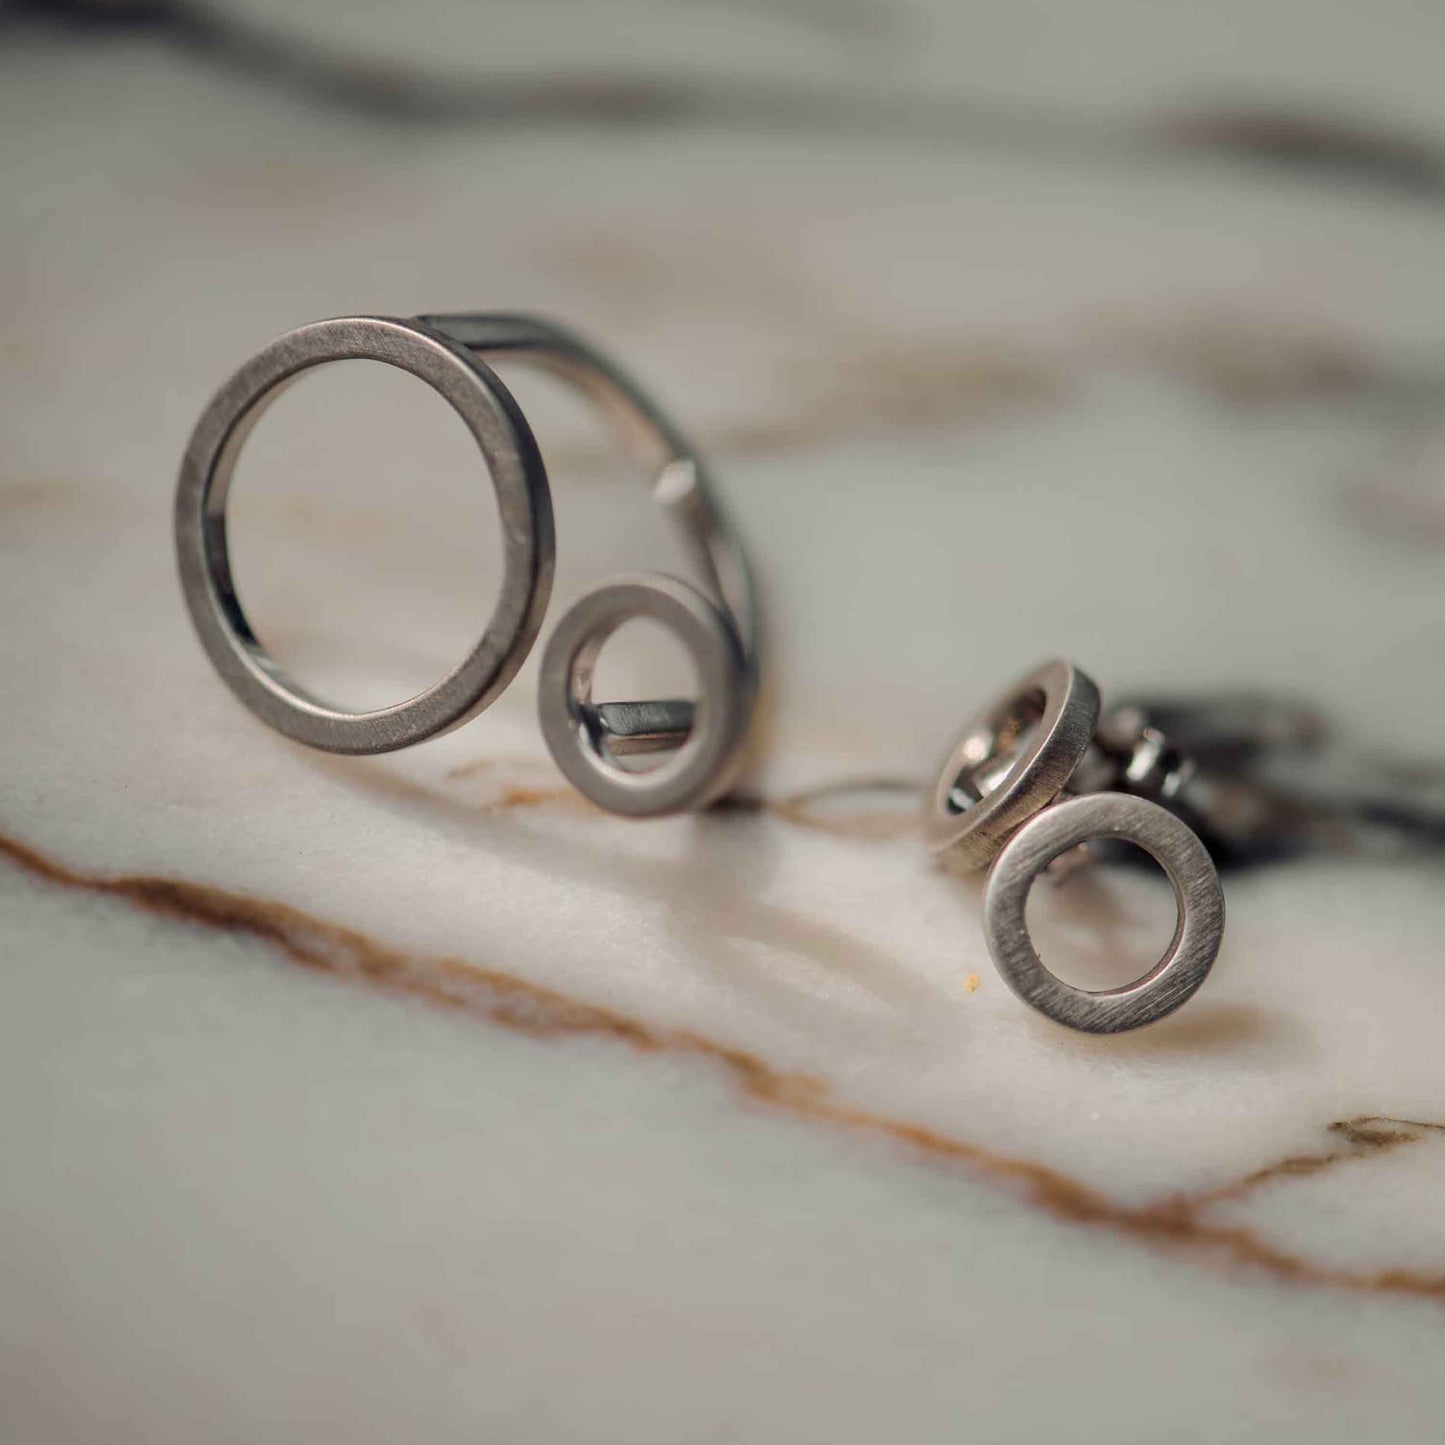 Der Ring und die Ohrstecker CIRCULAR bestehen aus 925er Sterlingsilber und einer dünnen Schicht Rhodium